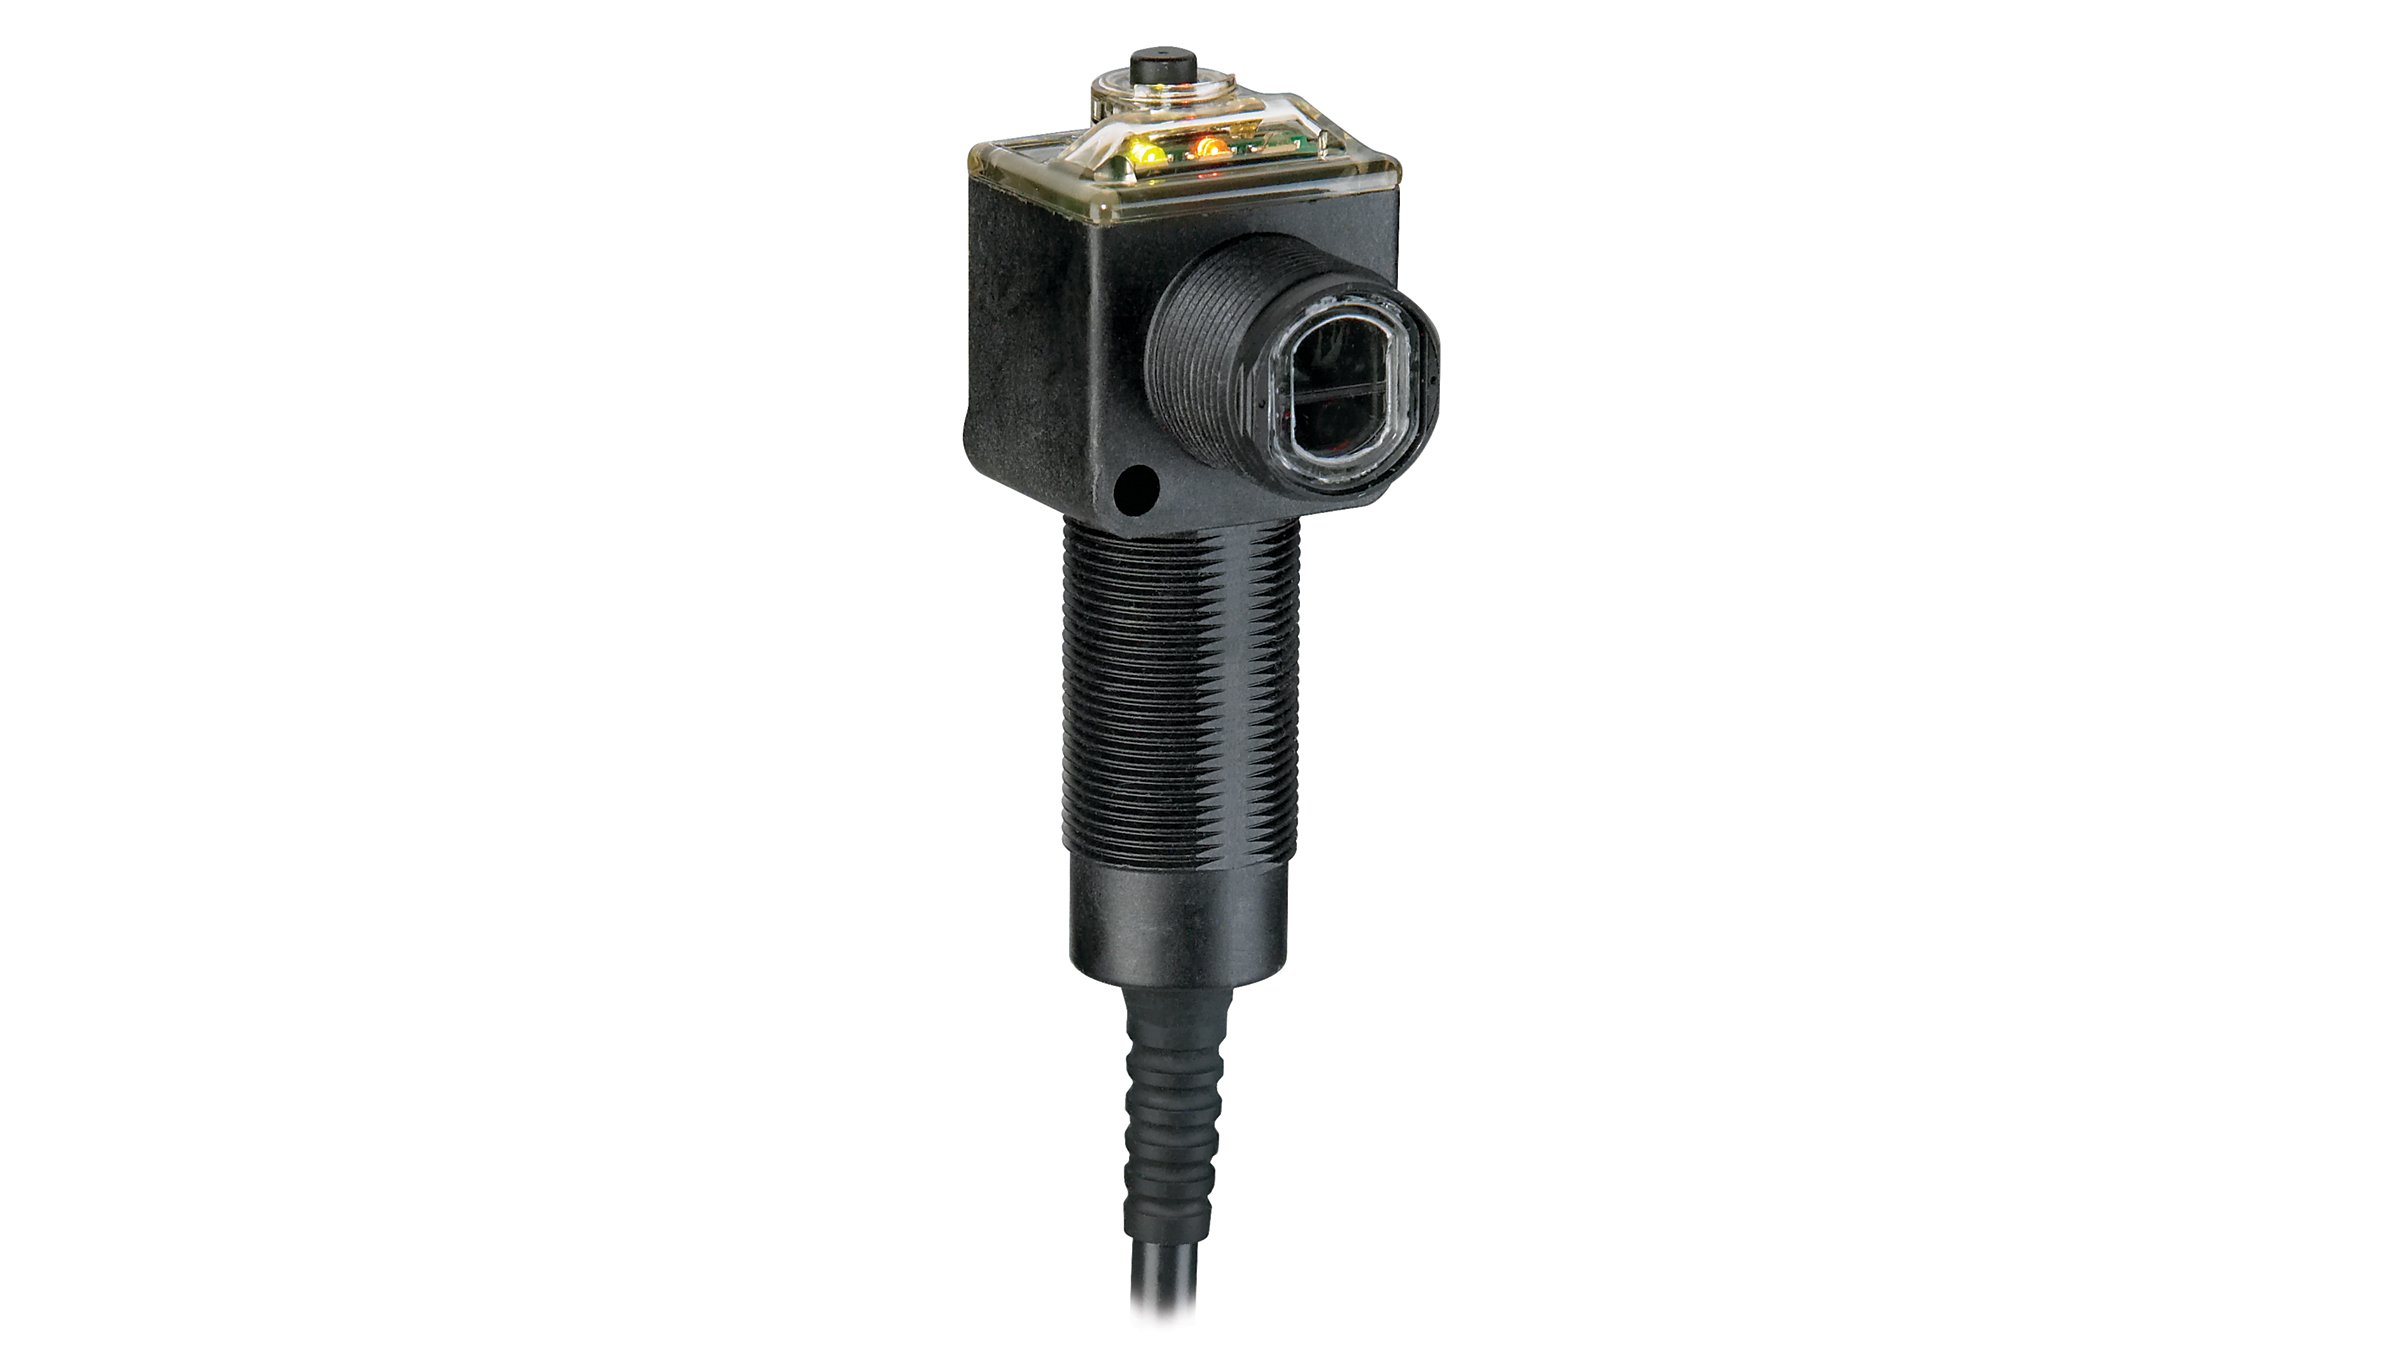 Sensor retangular Allen-Bradley preto com a face de sensor preta e cabo integrado.